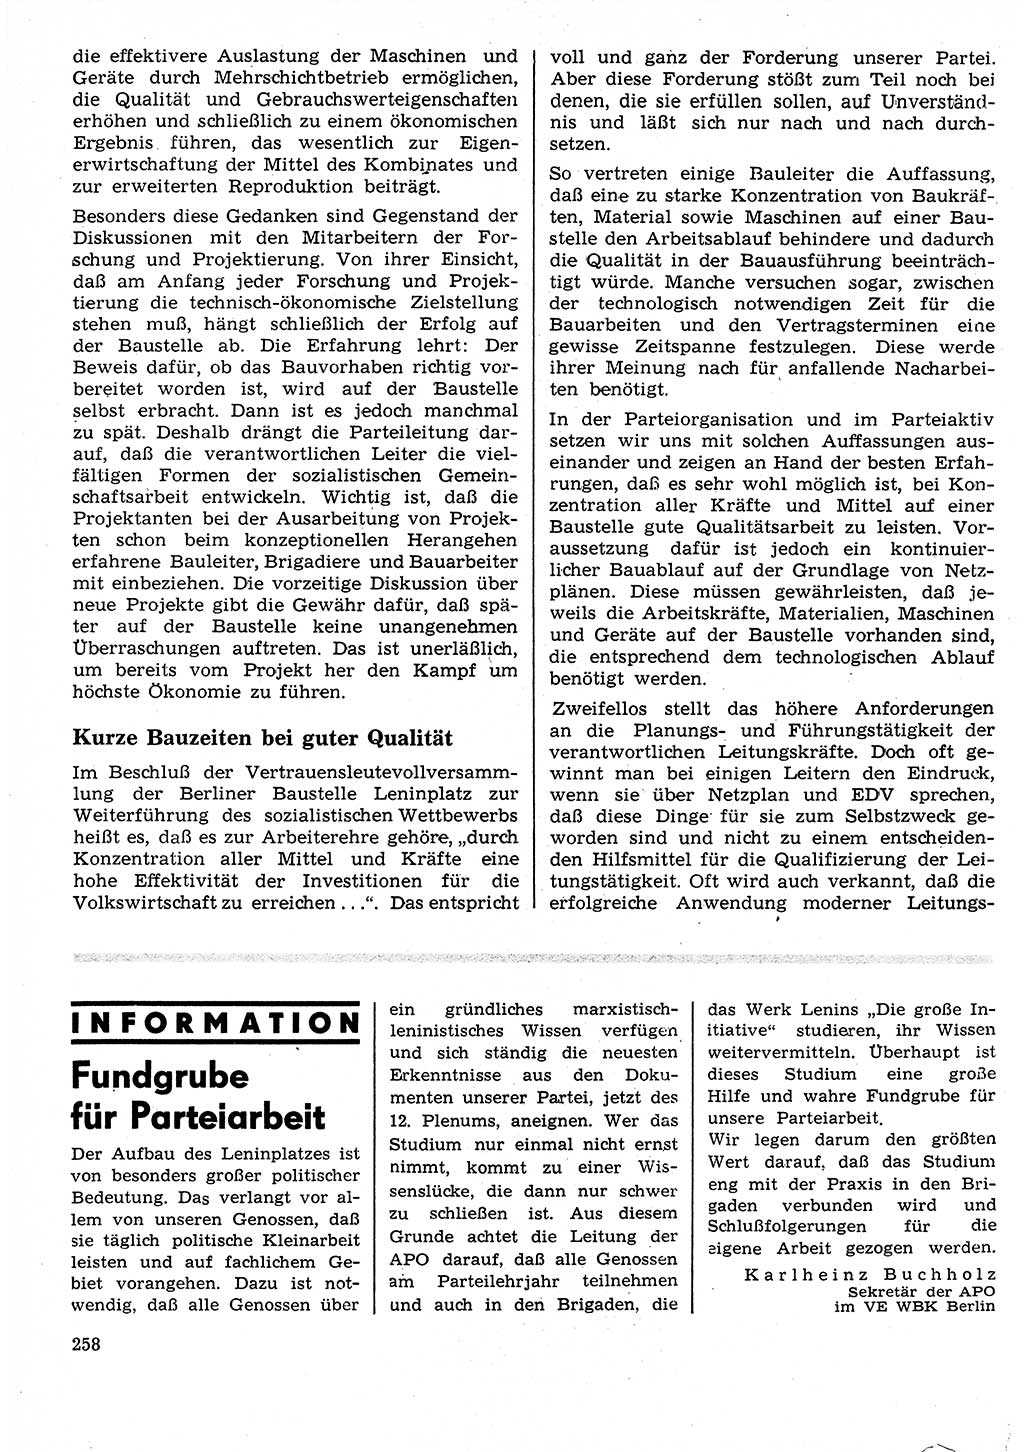 Neuer Weg (NW), Organ des Zentralkomitees (ZK) der SED (Sozialistische Einheitspartei Deutschlands) für Fragen des Parteilebens, 25. Jahrgang [Deutsche Demokratische Republik (DDR)] 1970, Seite 258 (NW ZK SED DDR 1970, S. 258)